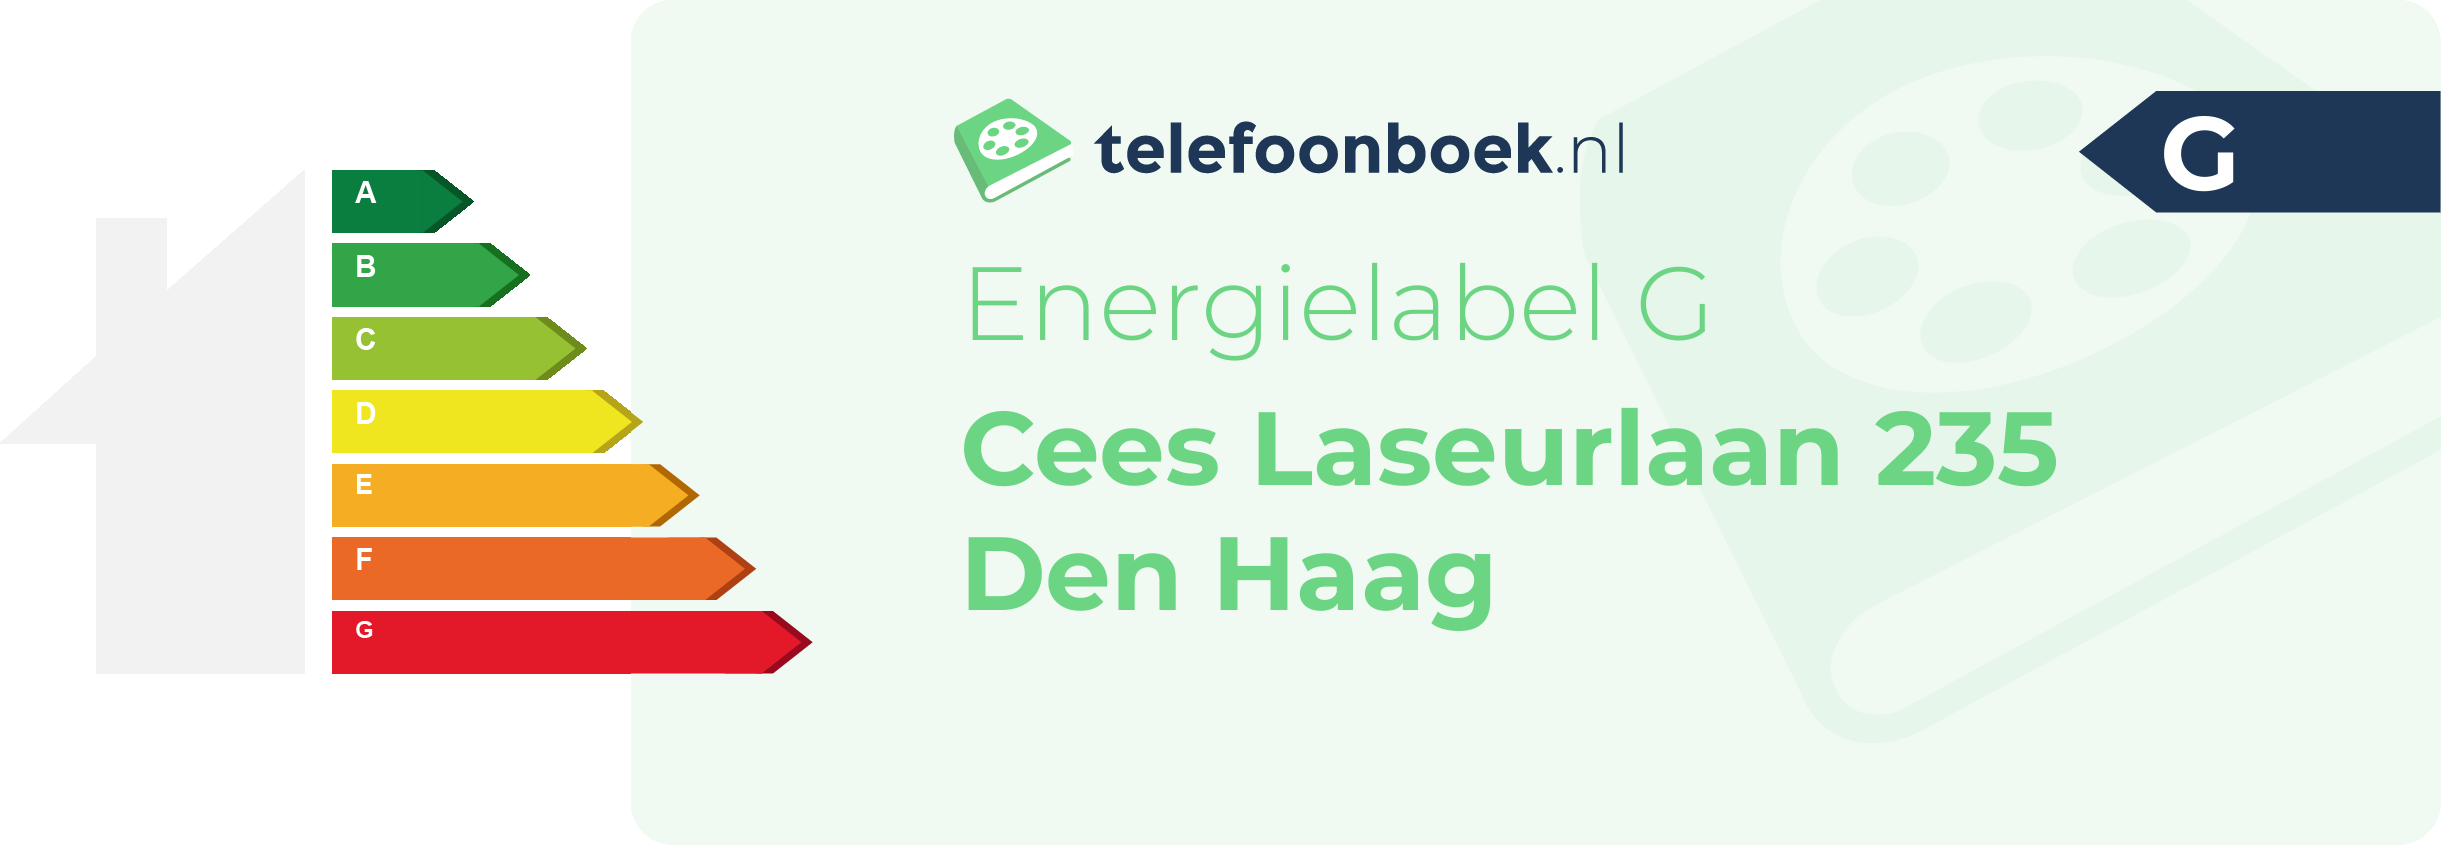 Energielabel Cees Laseurlaan 235 Den Haag